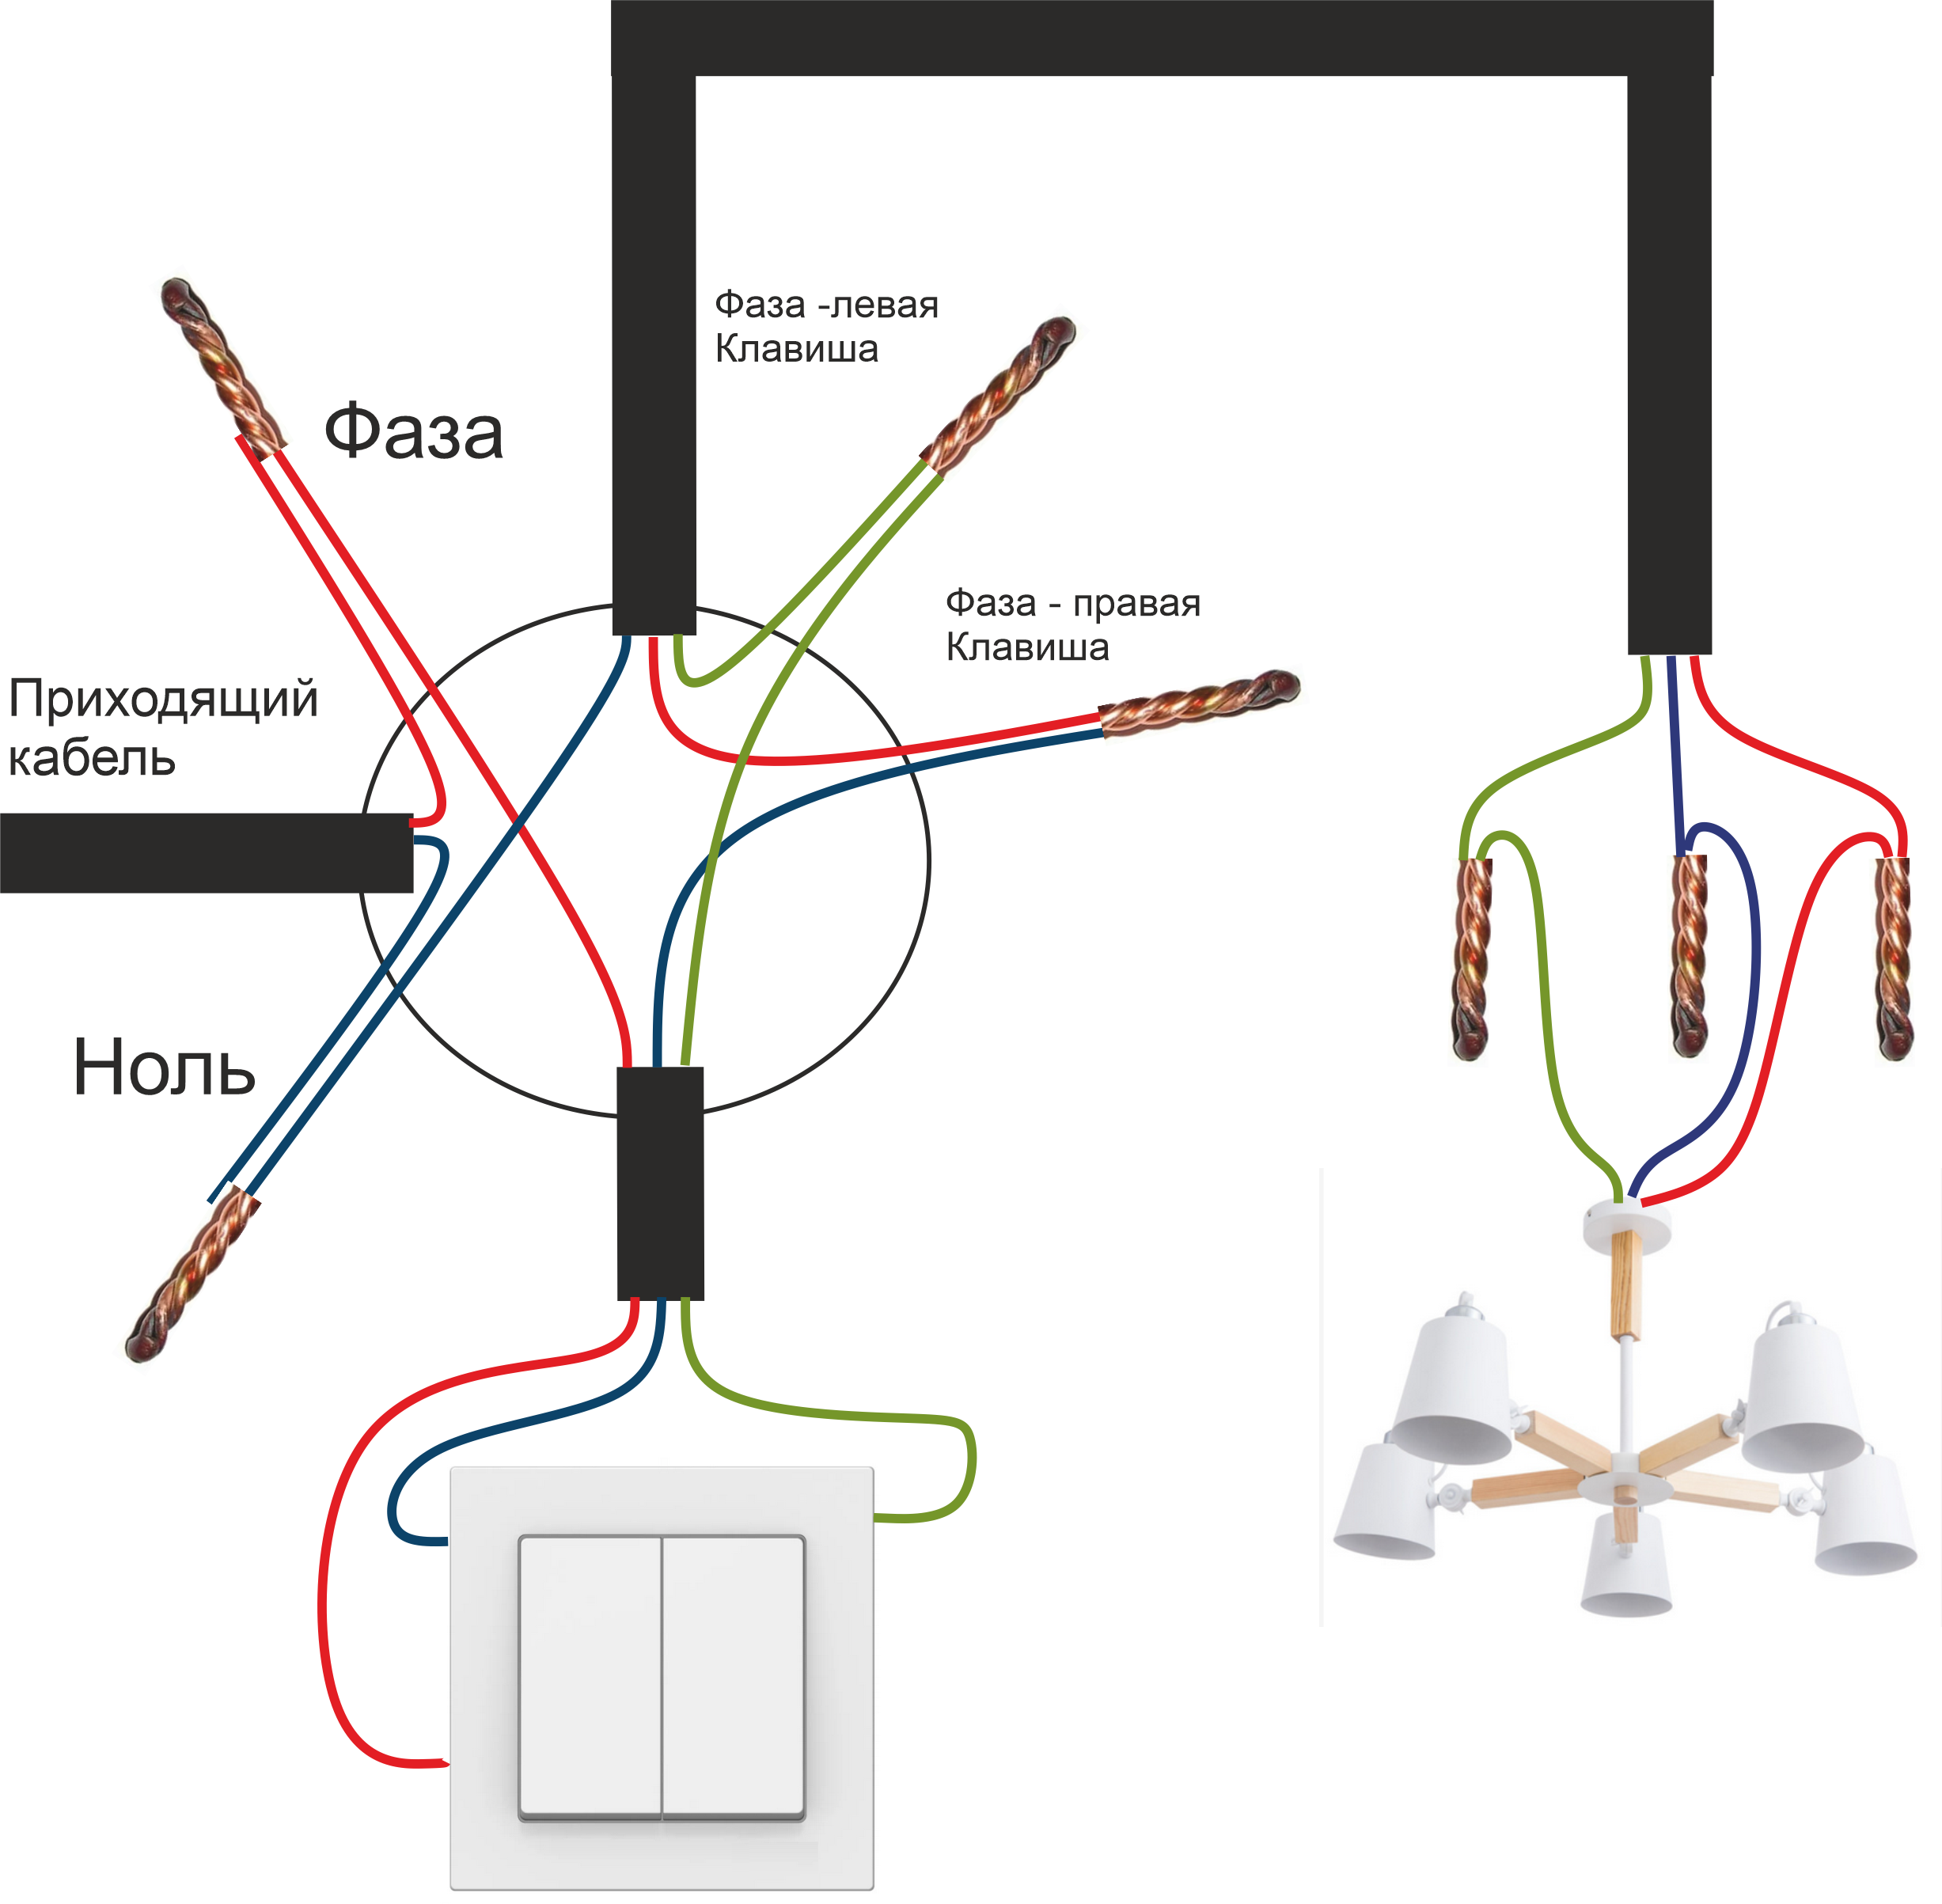 Как подключить одинарный выключатель. Схема соединения проводов двухклавишного выключателя. Схема подключения двухклавишного выключателя на 2 лампочки. Схема подсоединения двухклавишного выключателя к двум лампочкам. Схема подключения двухклавишного выключателя трехжильным кабелем.